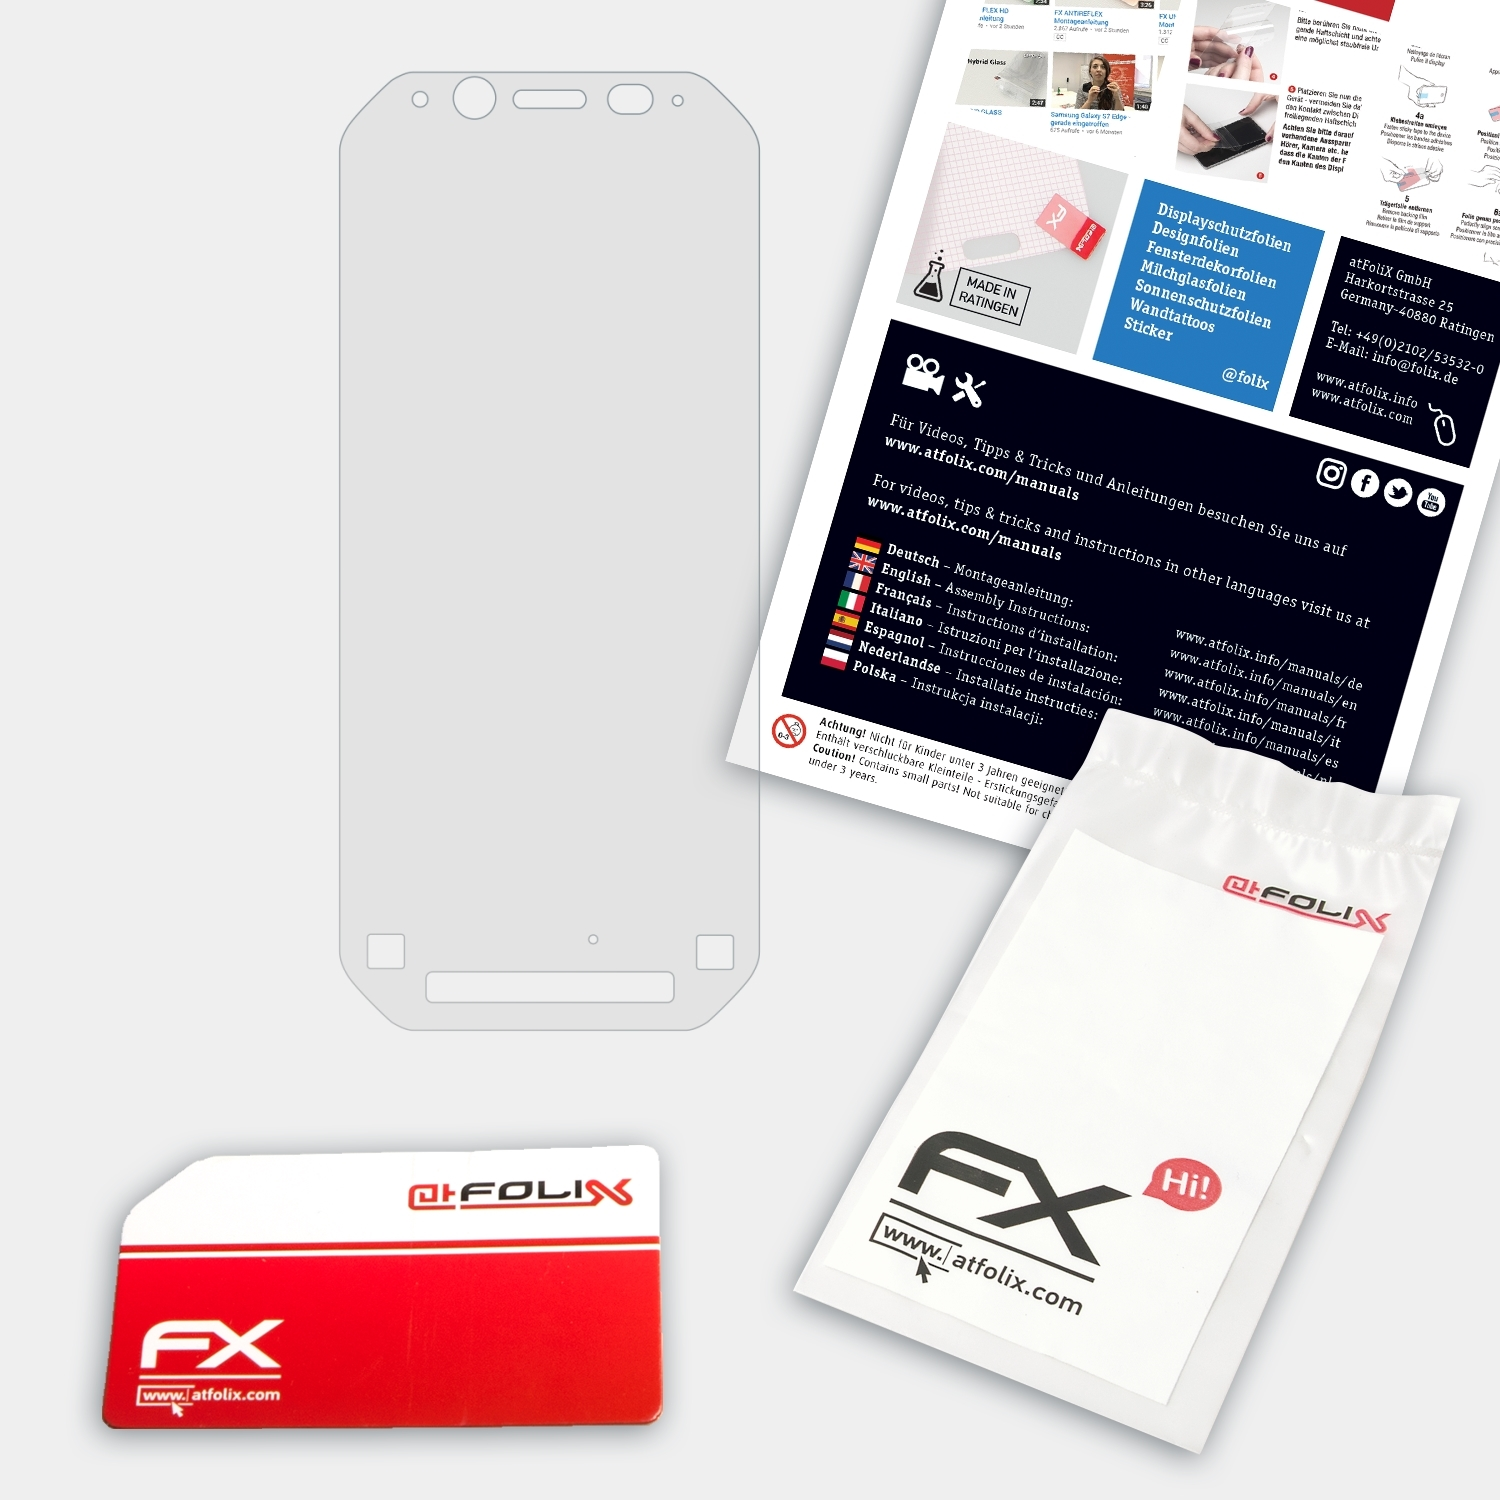 FX-Hybrid-Glass Panasonic Toughbook FZ-N1) ATFOLIX Schutzglas(für